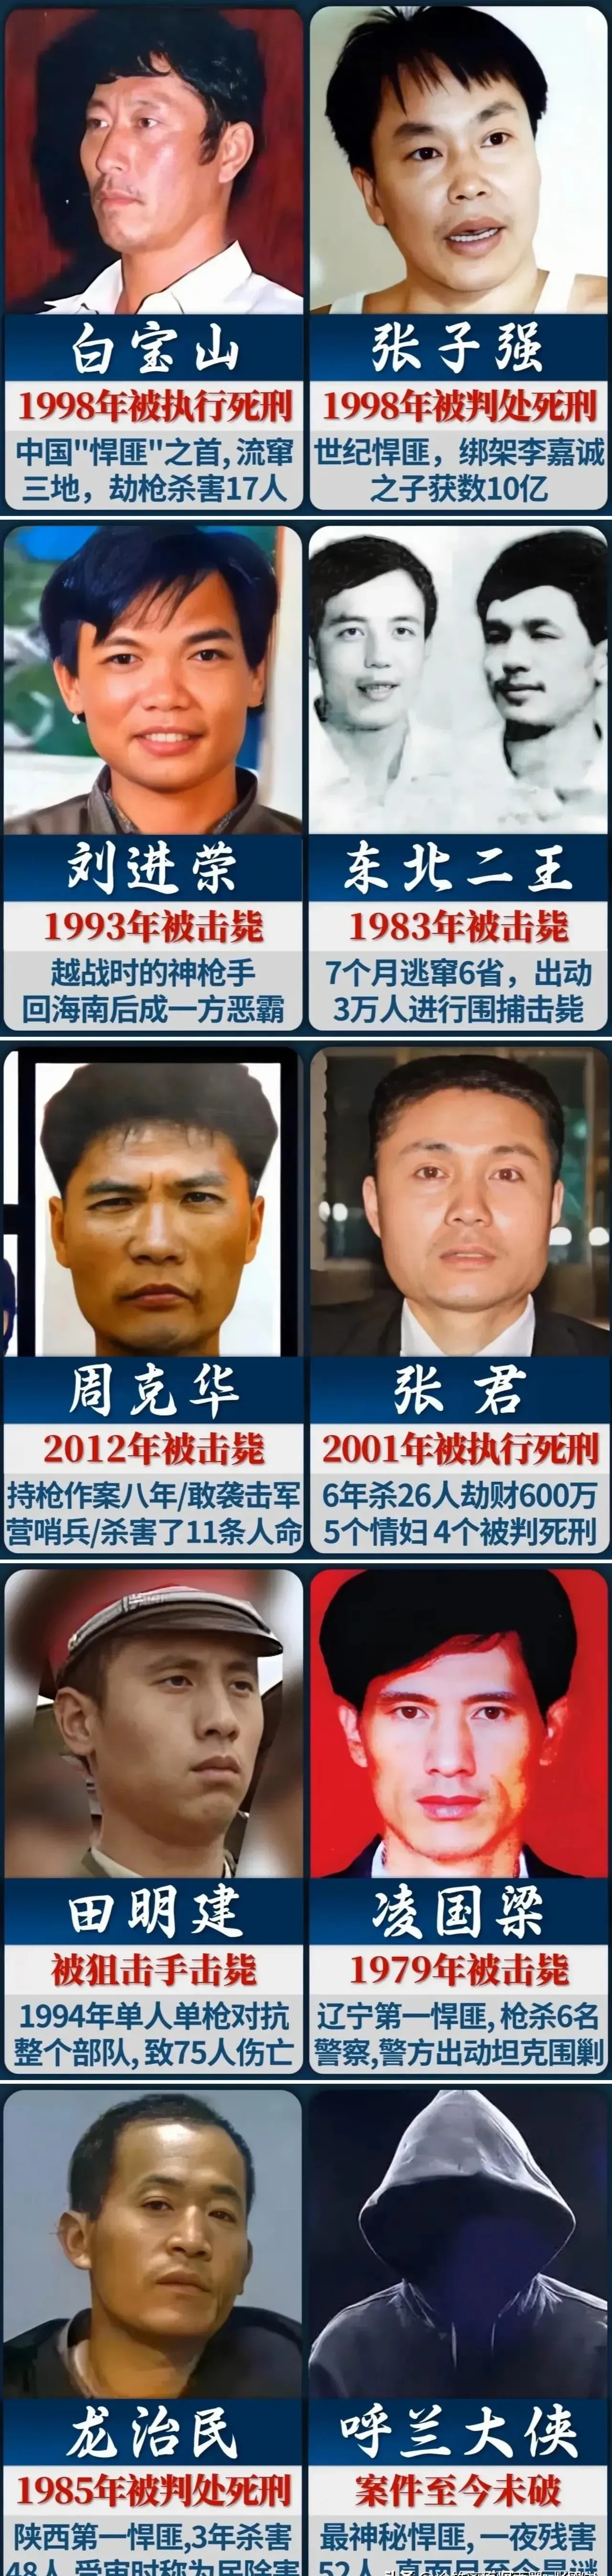 中国当代十大悍匪的姓名,罪行以及最终结局概述一览:  这十位悍匪在